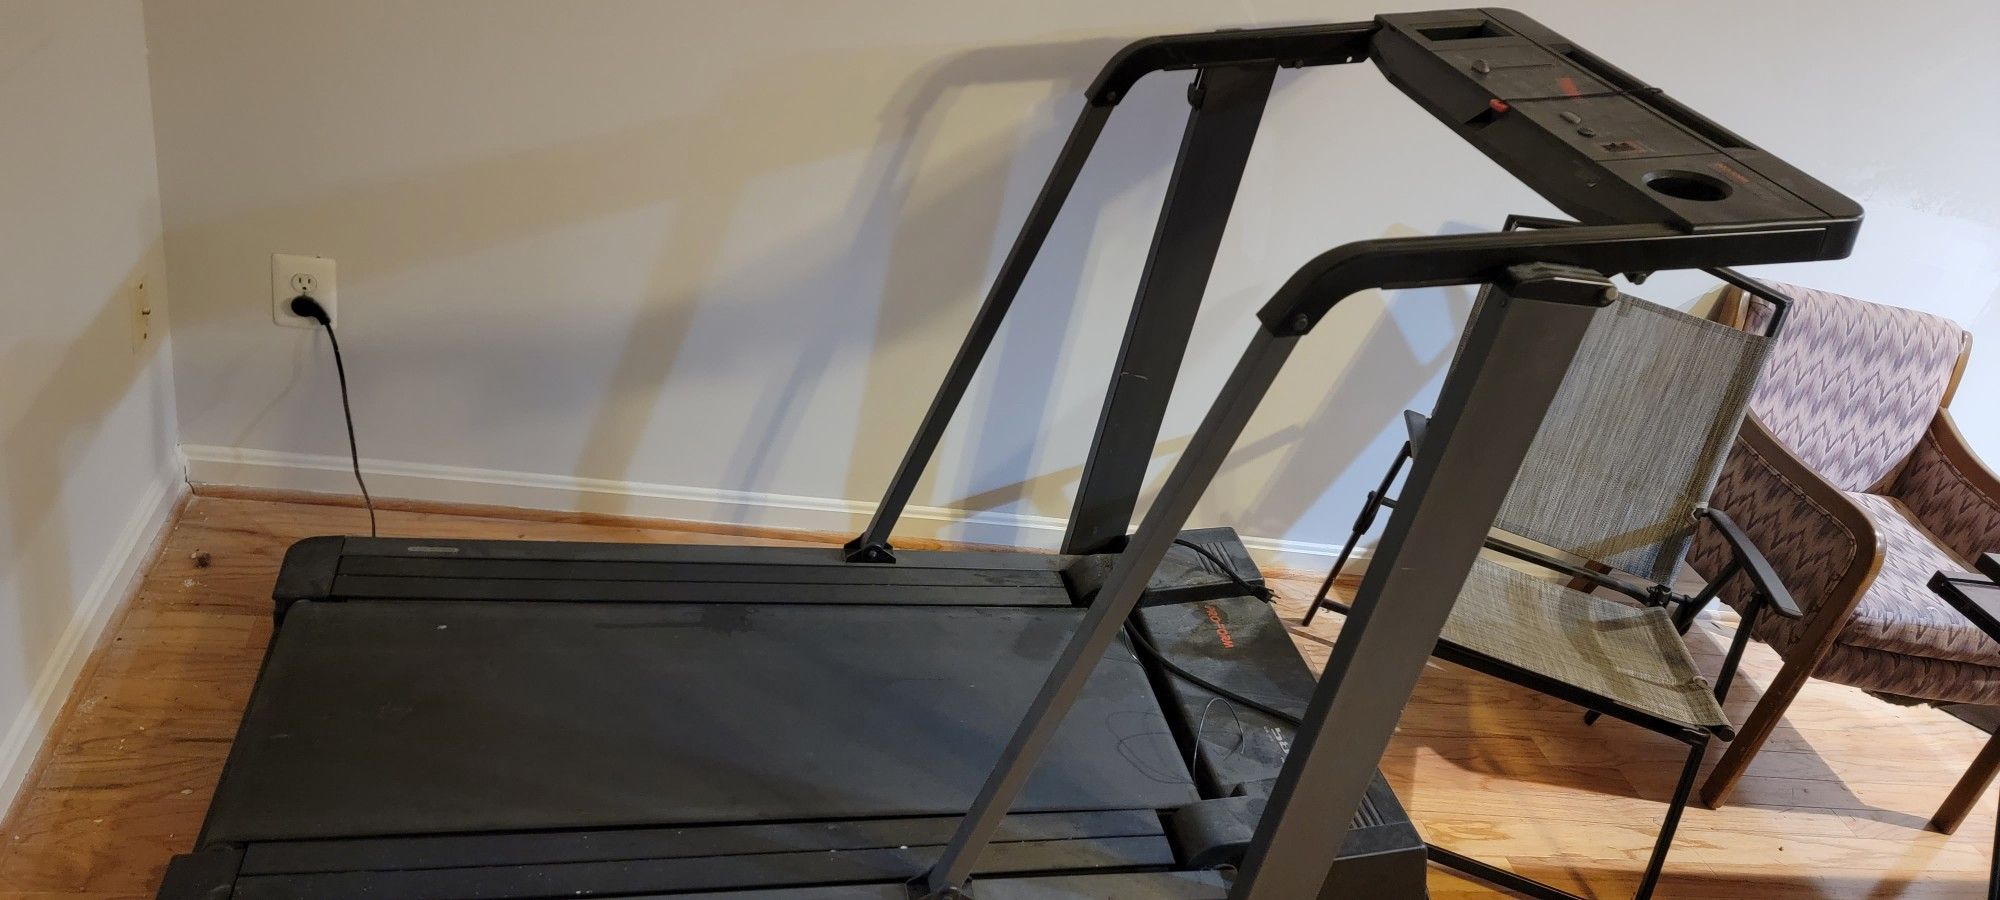 Treadmill $50.00 OBO